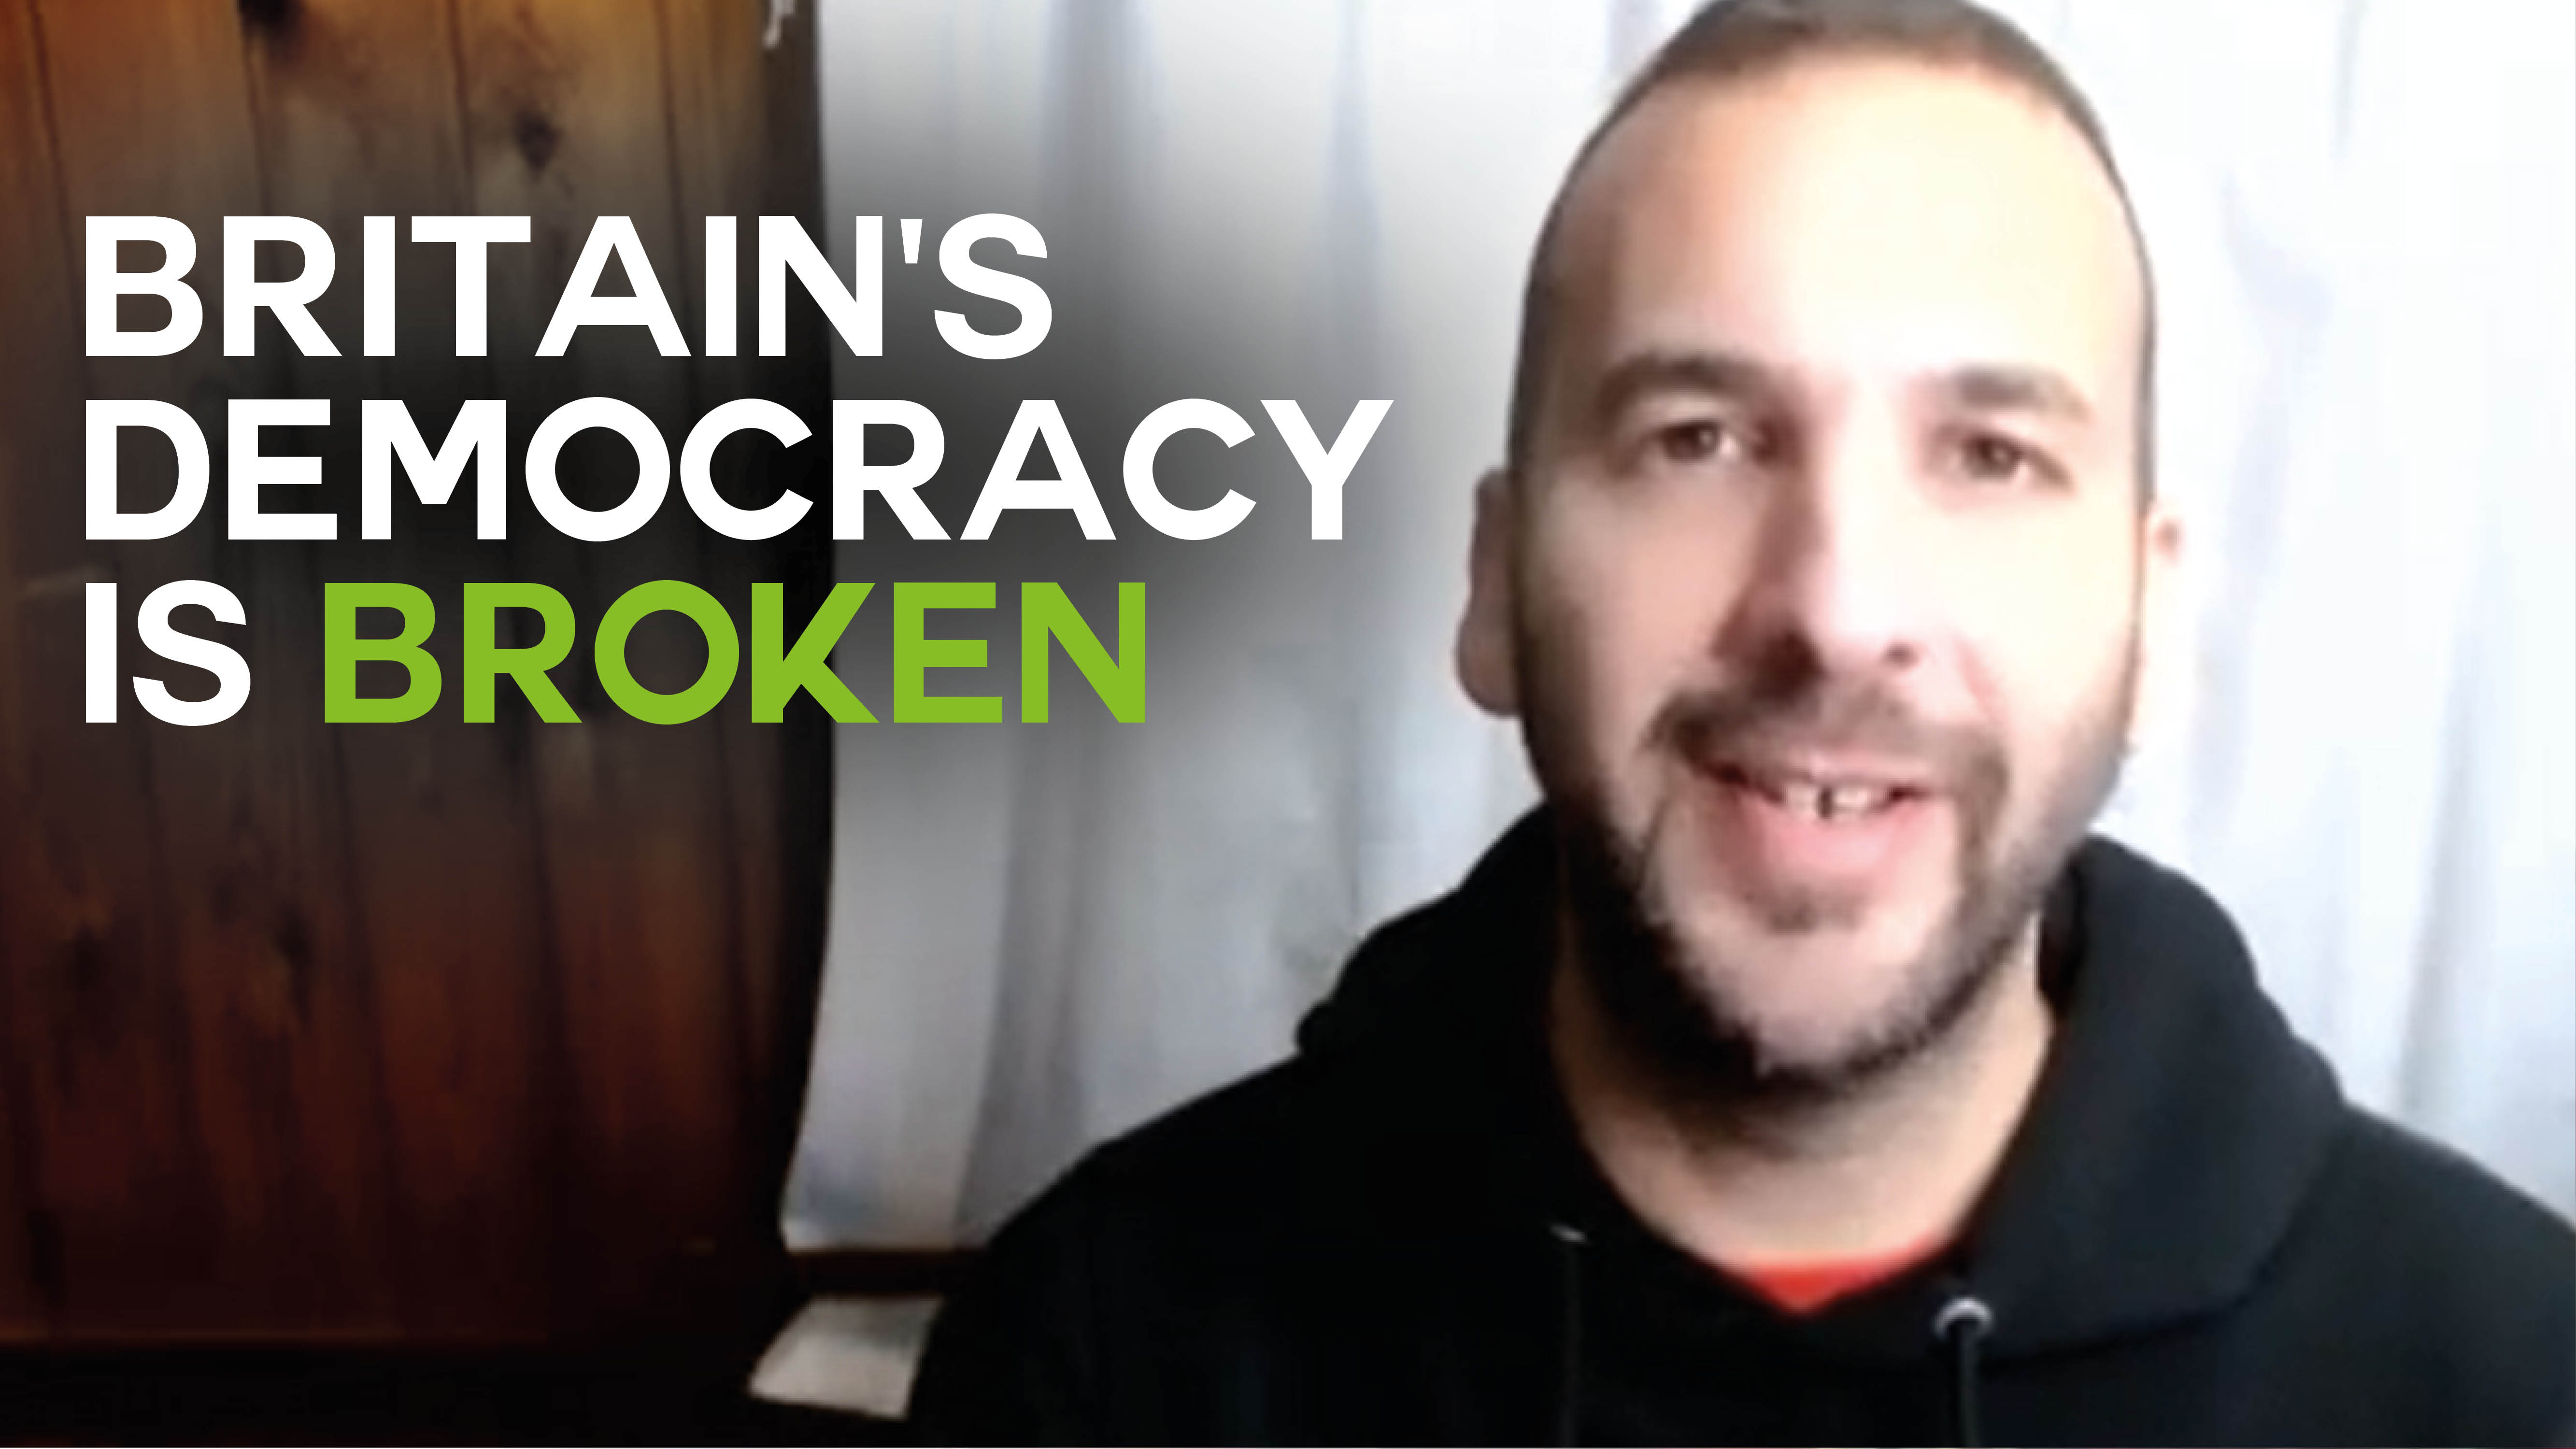 WATCH: Zack Polanski on why Britain’s democracy is broken